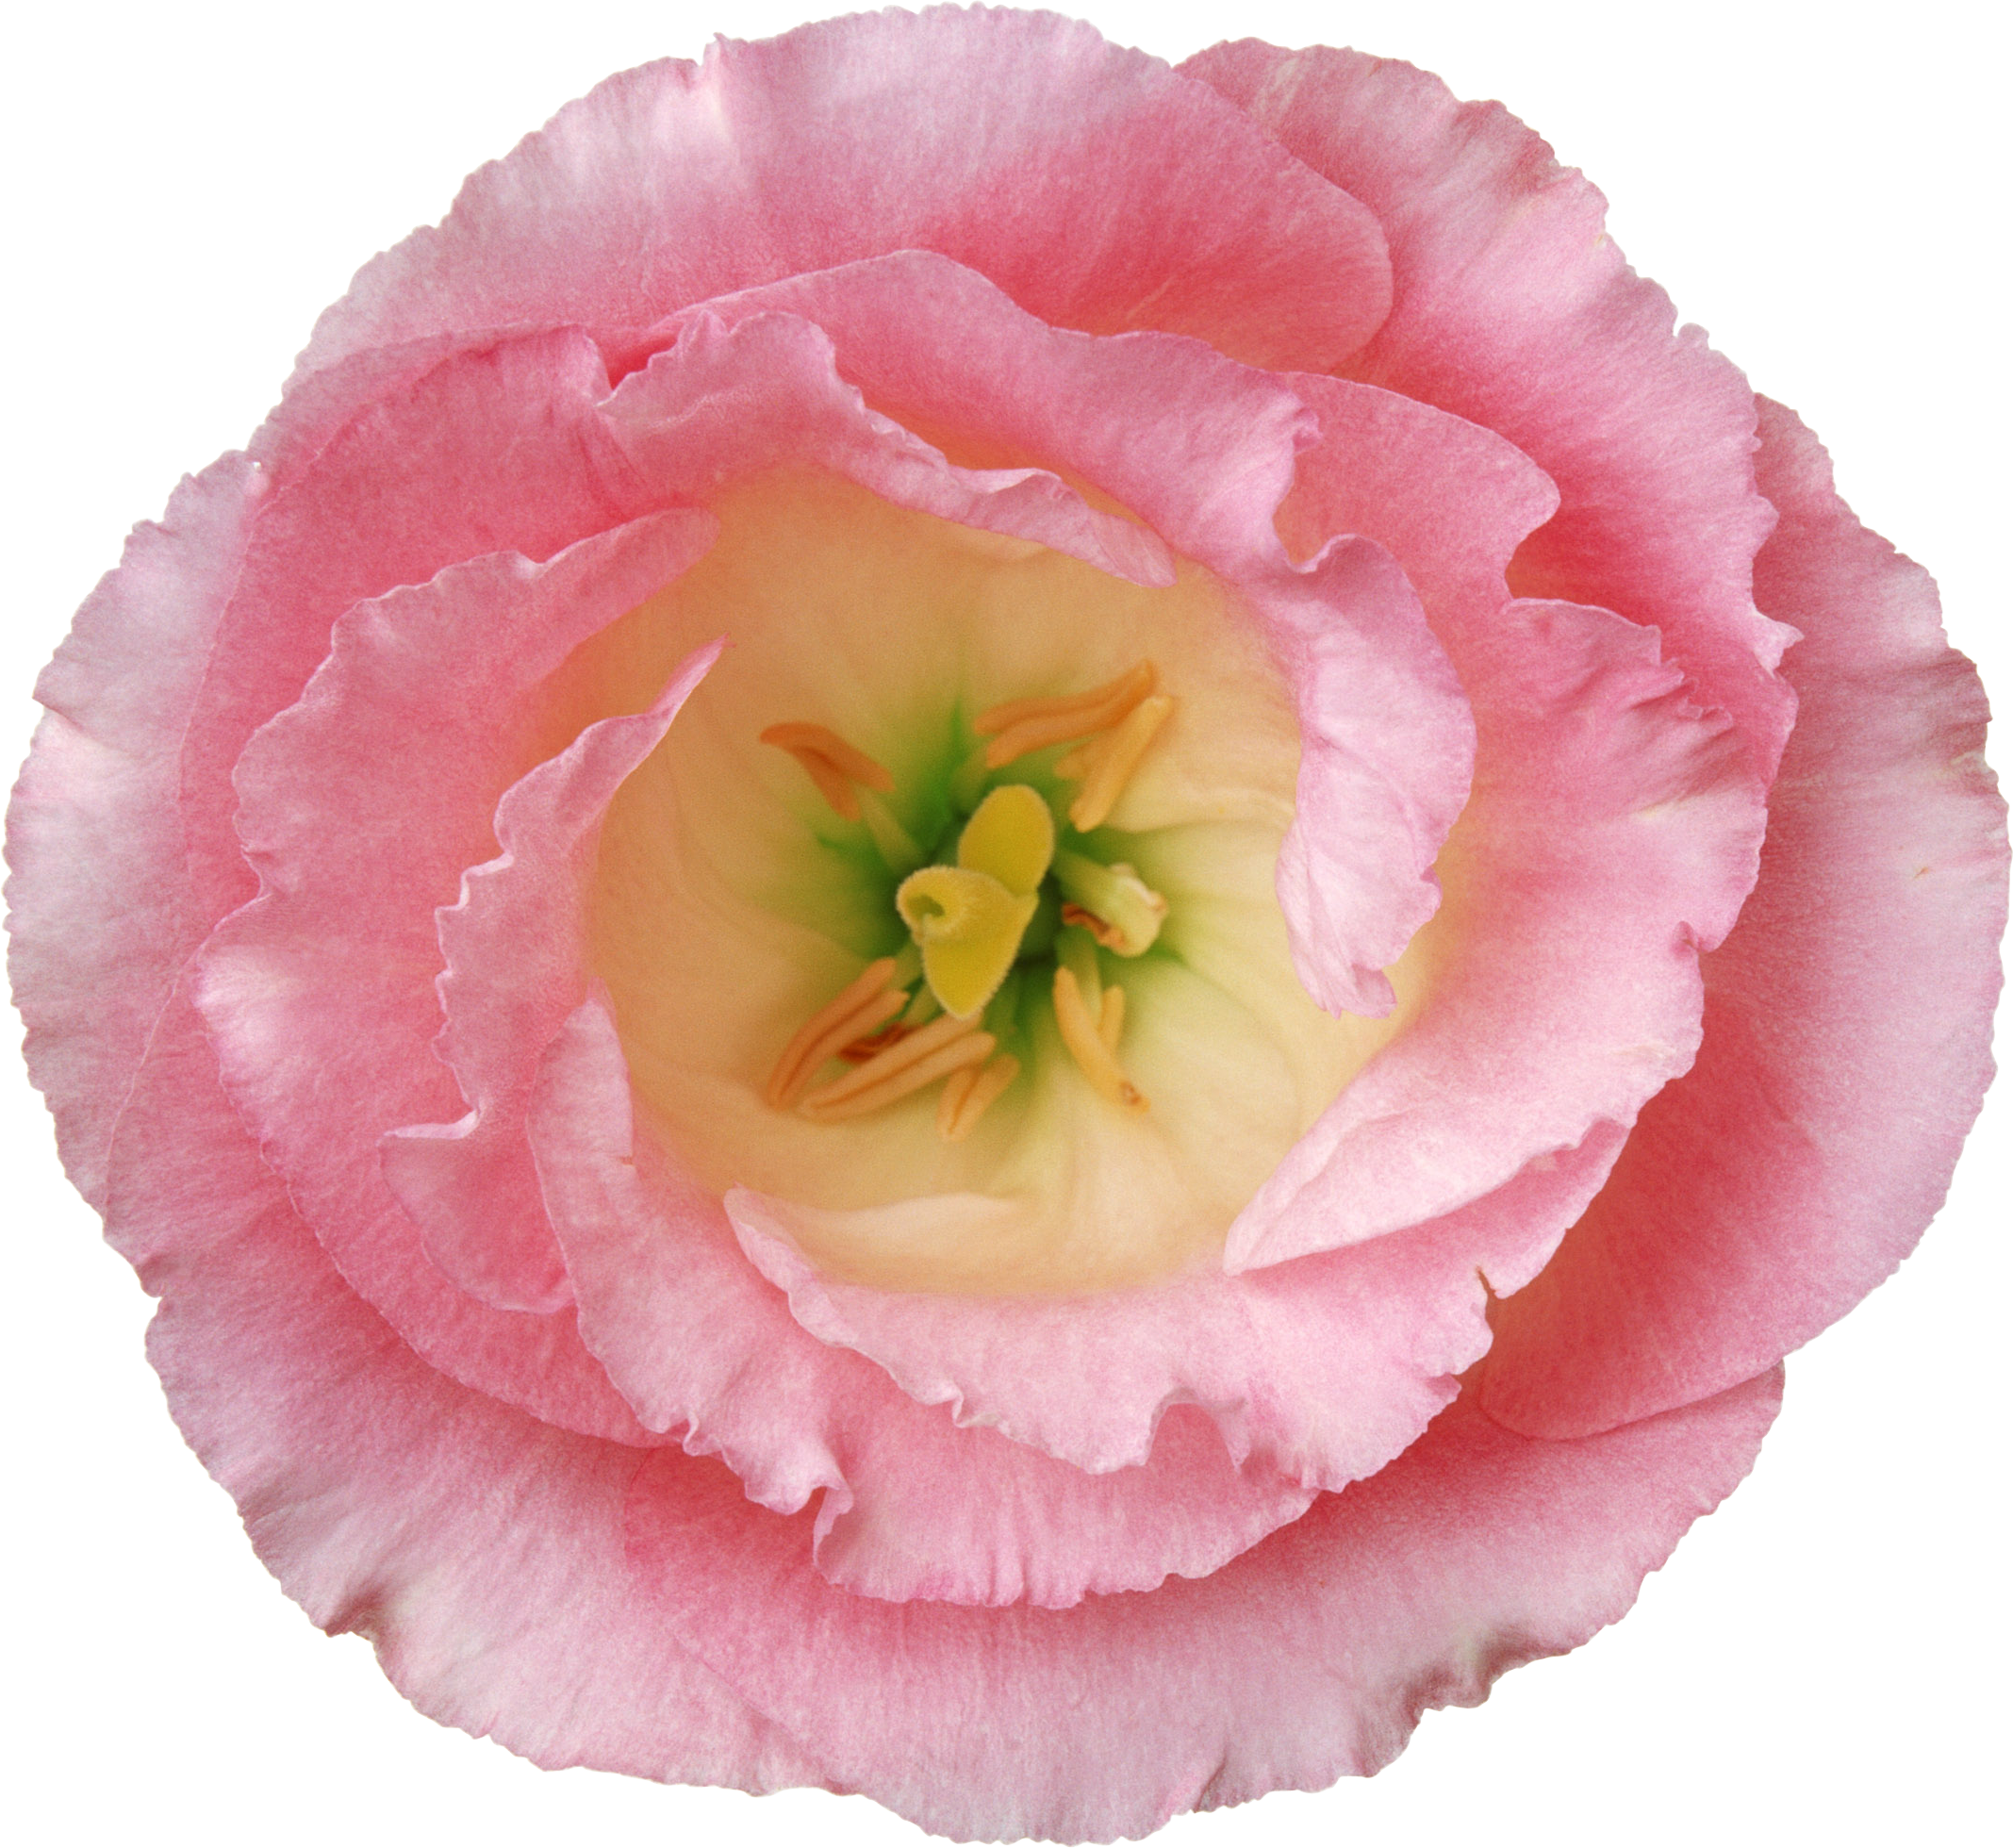 Flower Poppy Hibiscus - Flower Poppy Hibiscus (2135x1960)